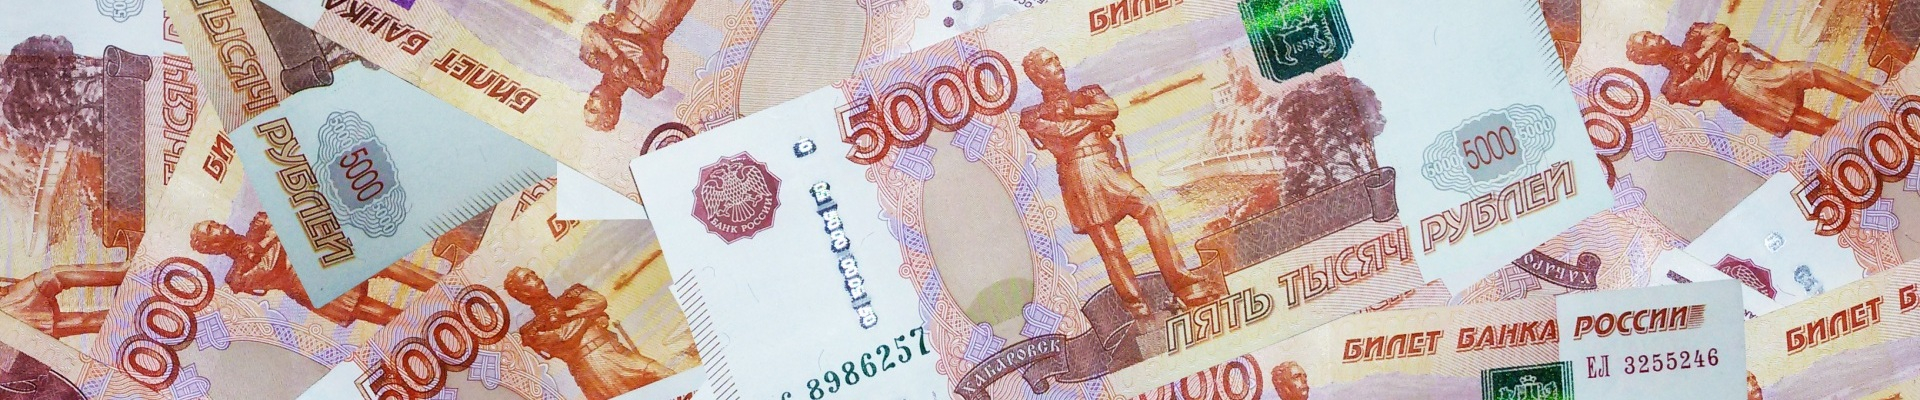 В Газпромбанке принято решение снизить процентную ставку по «Льготному ипотечному кредиту»